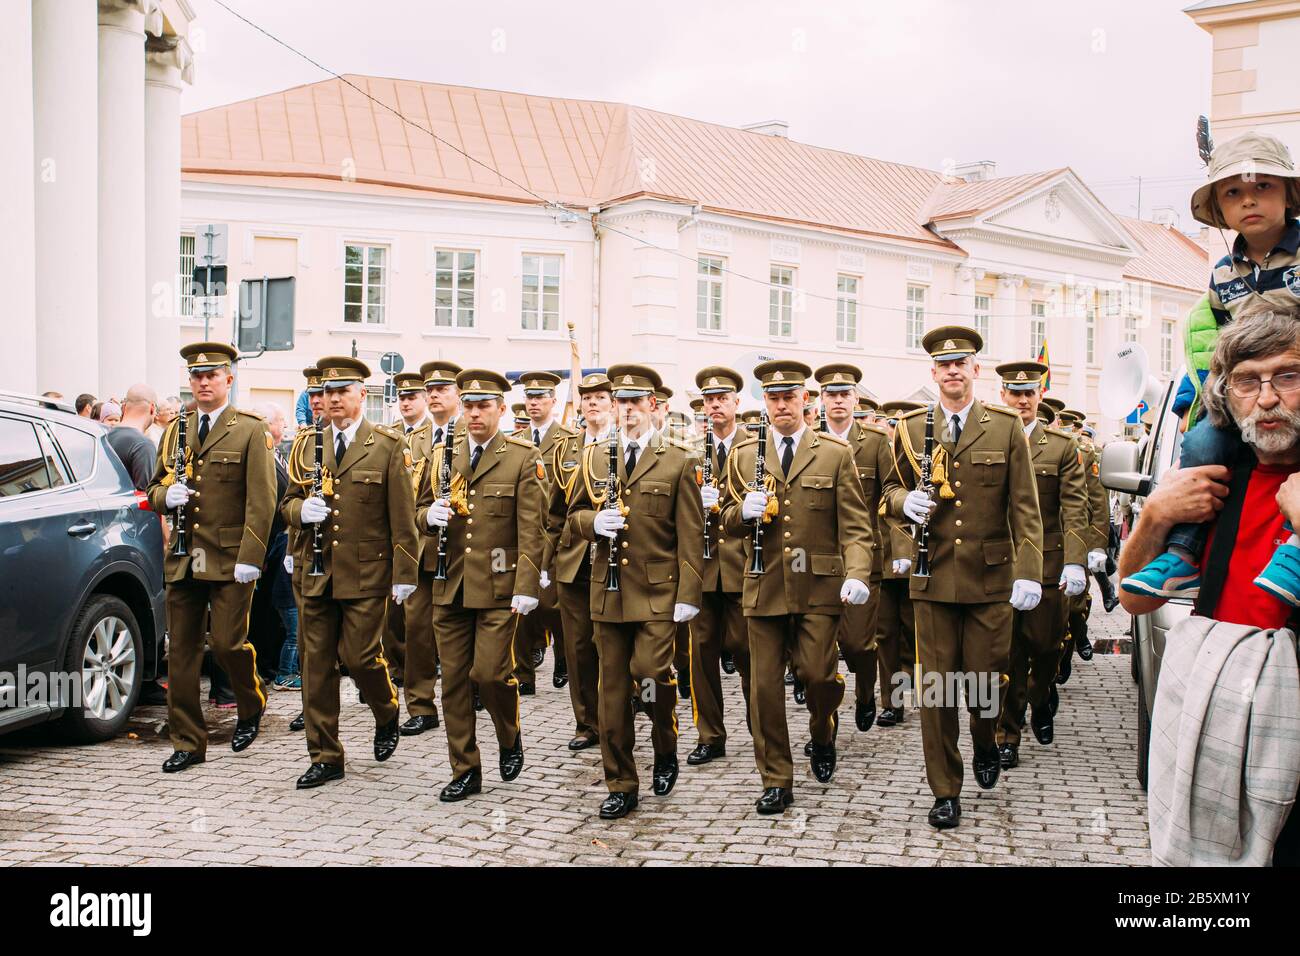 Vilnius, Lituanie. Les officiers de la bande militaire de Lituanie Prendre part au défilé de jour de l'État sur place près de Palais présidentiel. Maison de vacances à Commemo Banque D'Images